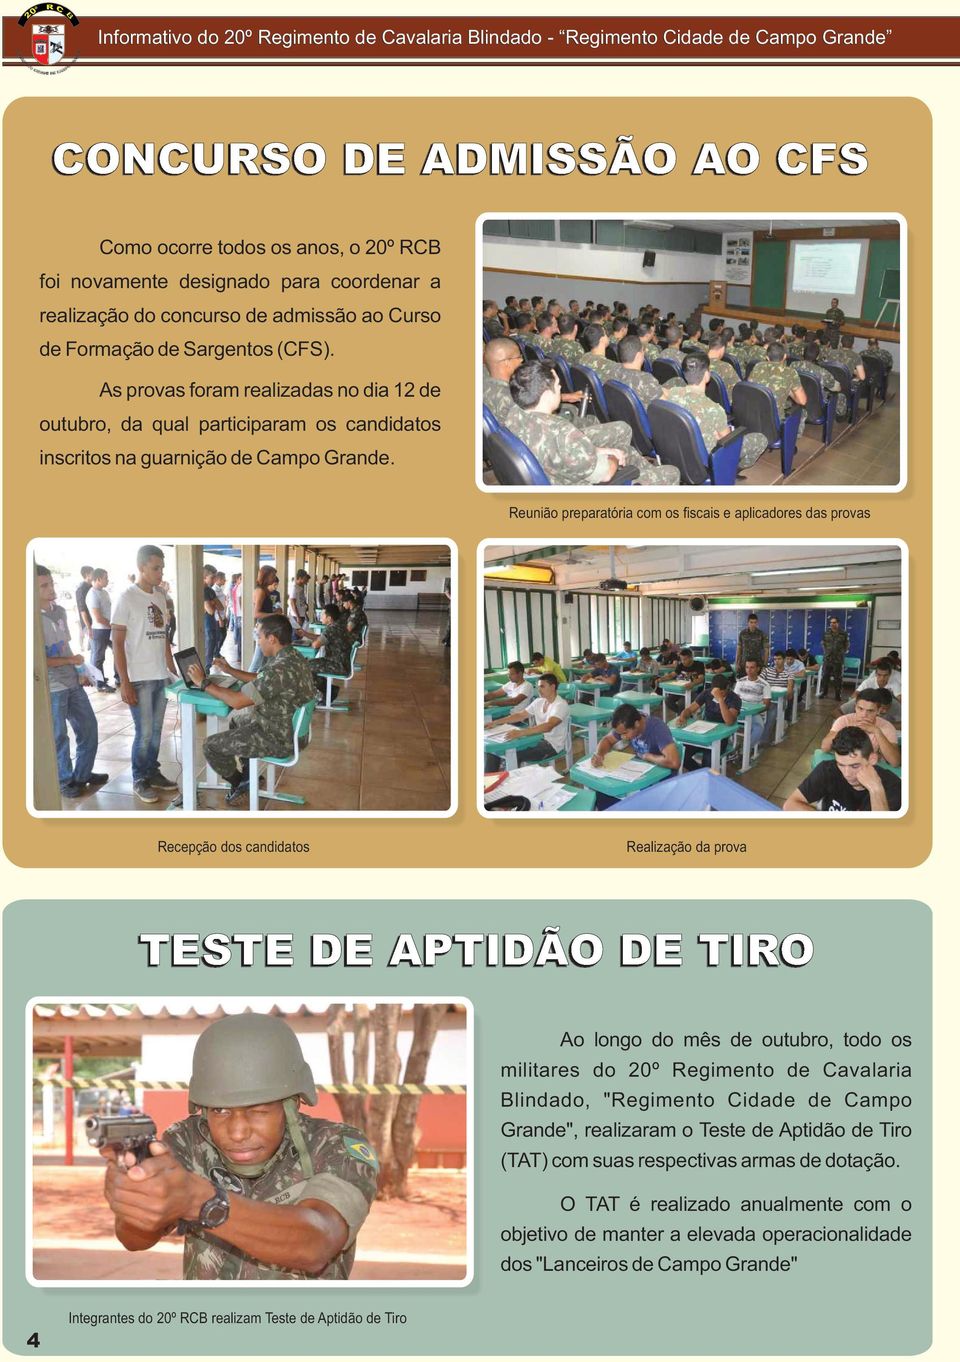 As provas foram realizadas no dia 12 de outubro, da qual participaram os candidatos inscritos na guarnição de Campo Grande.